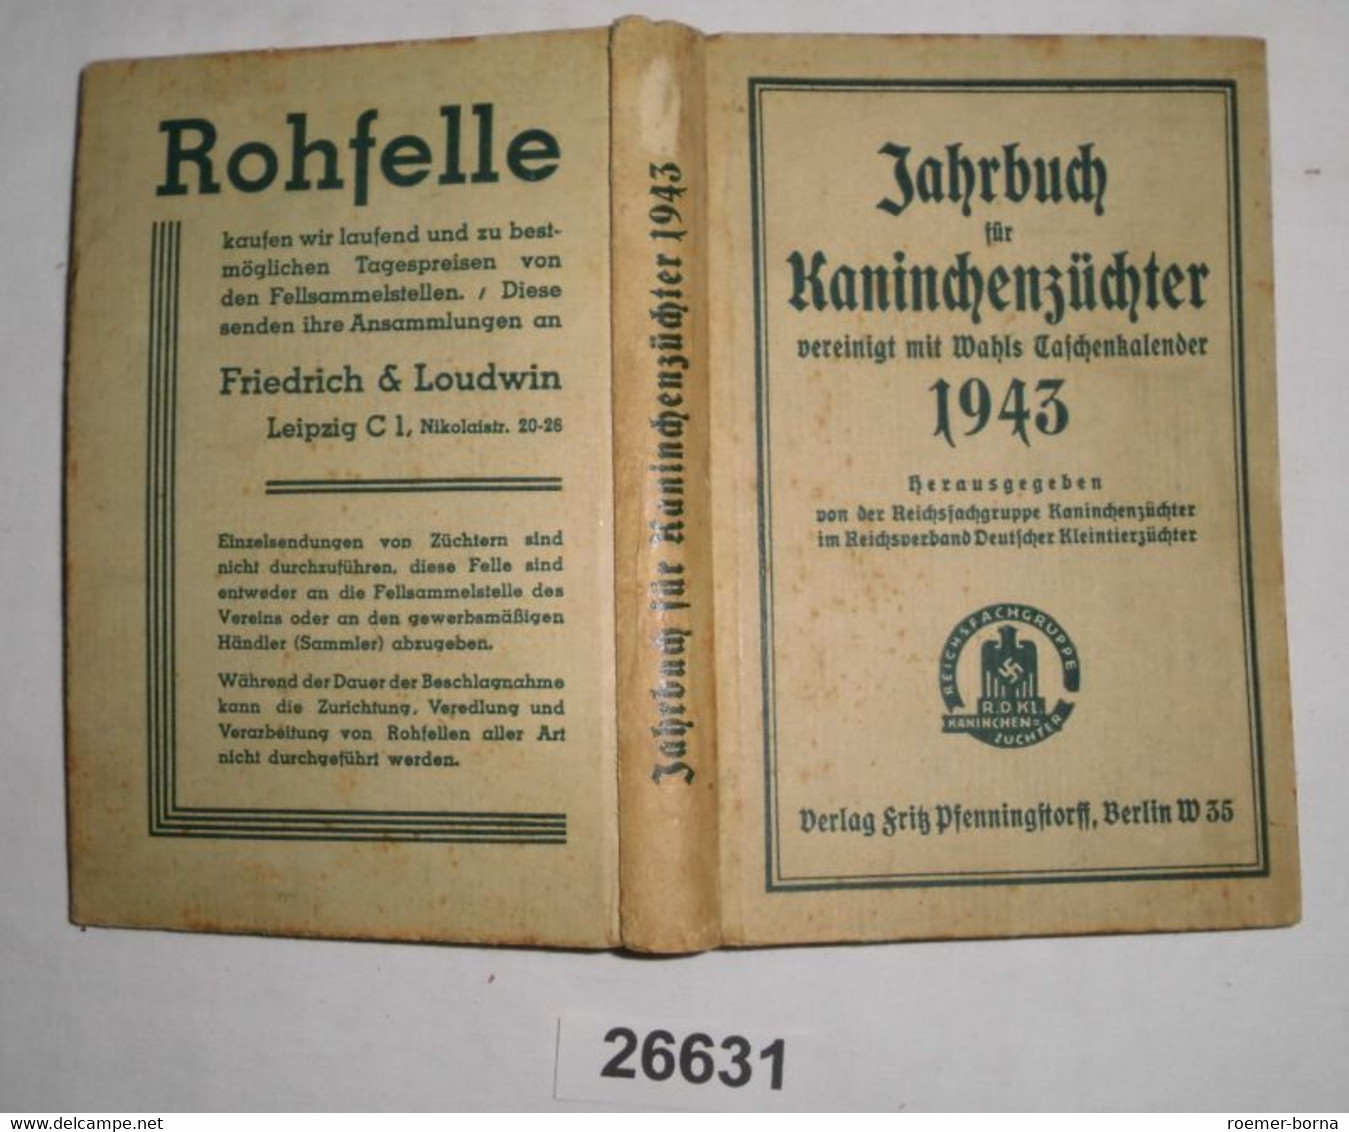 Jahrbuch Für Kaninchenzüchter Vereinigt Mit Wahls Taschenkalender 1943 - Animals